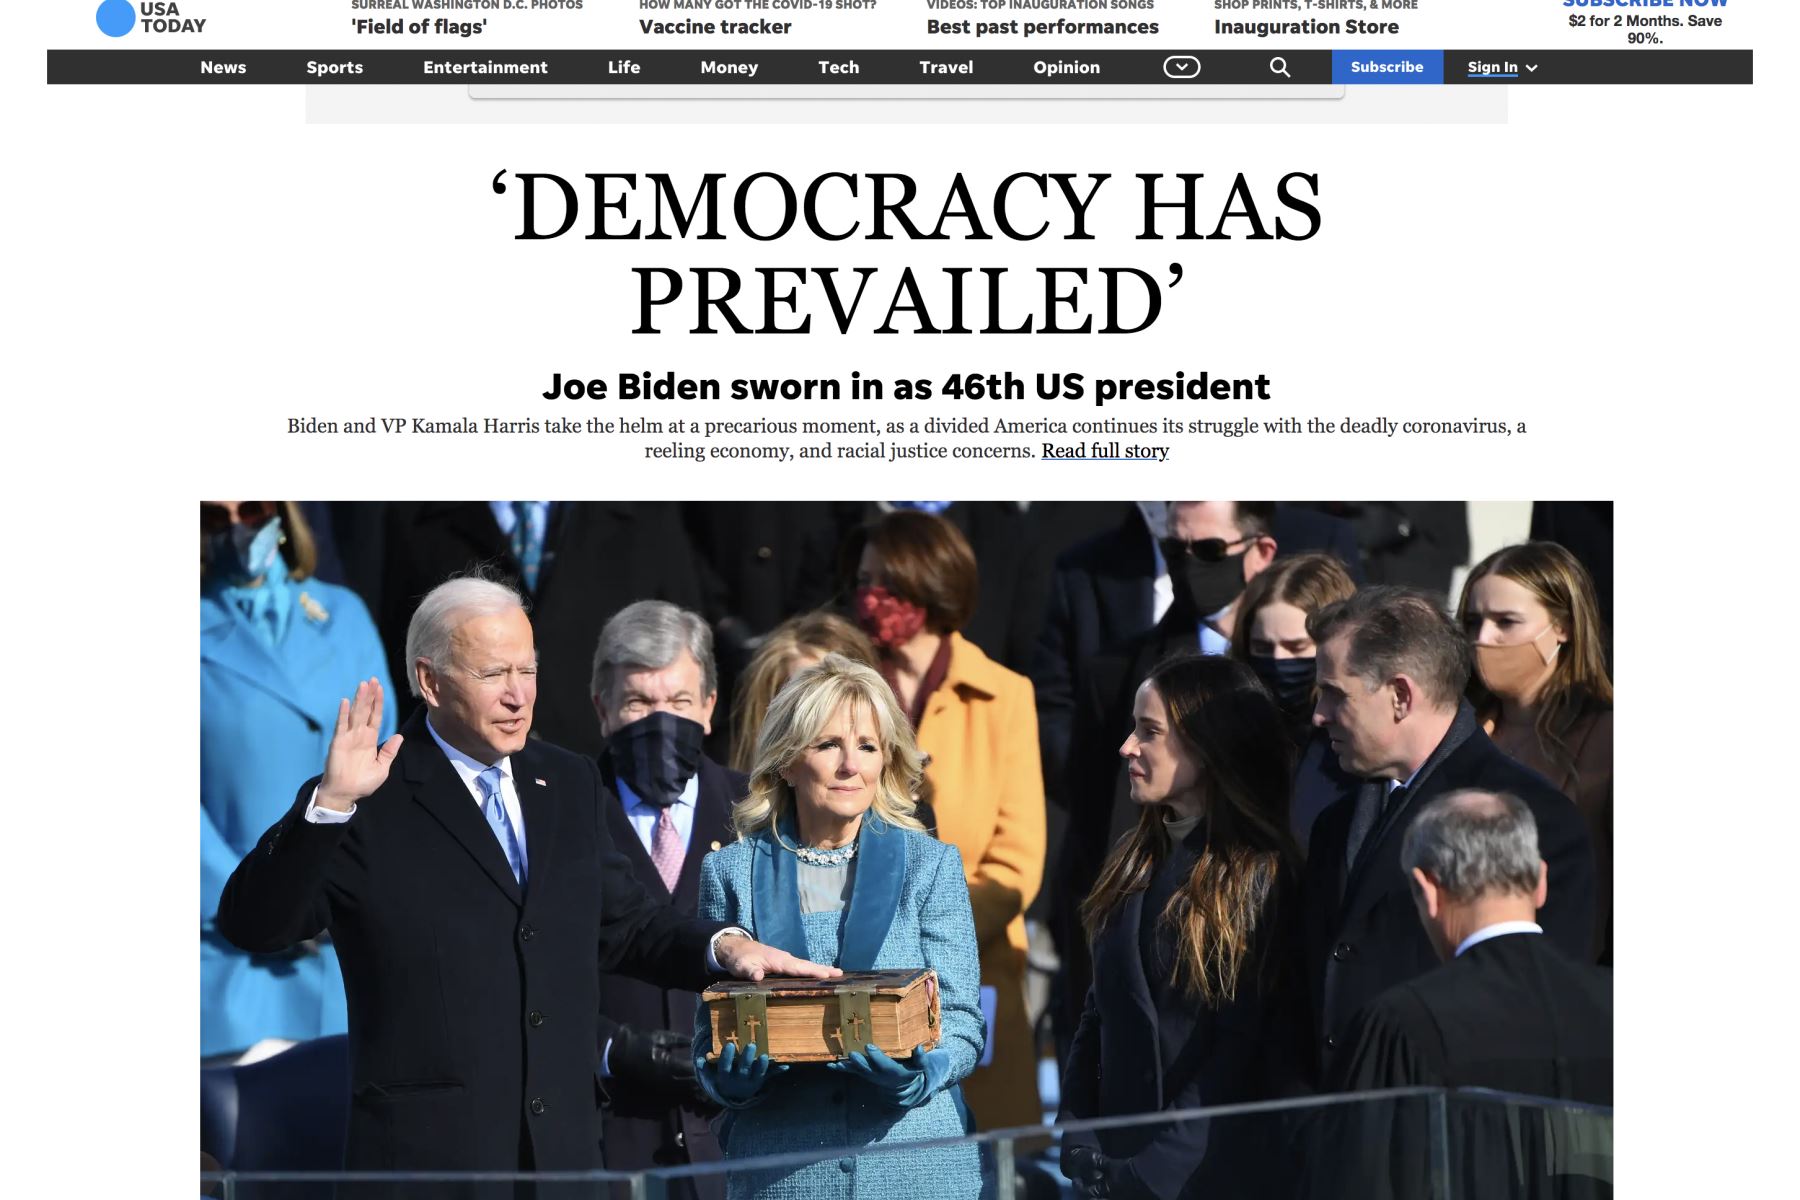 Así informa la prensa mundial sobre la histórica juramentación de Joe Biden, como presidente de los Estados Unidos. Usa Today.